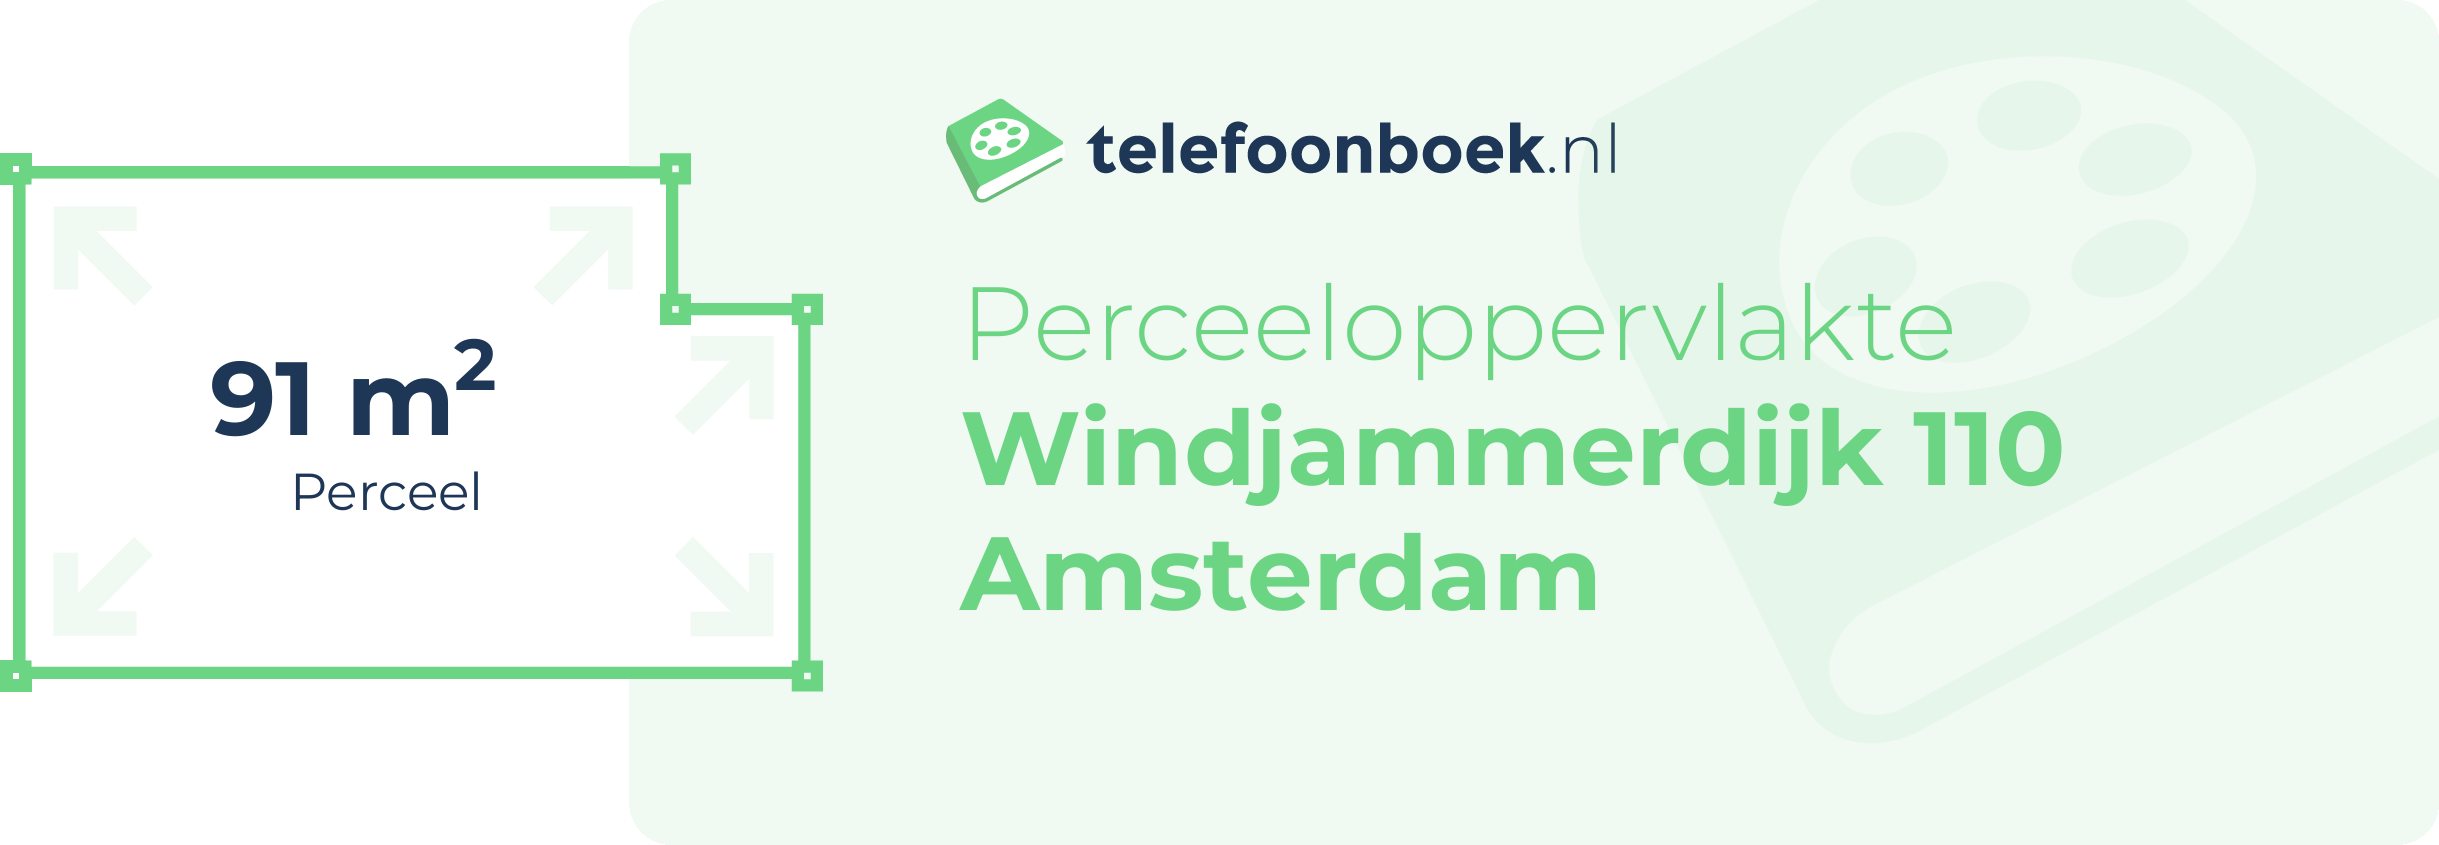 Perceeloppervlakte Windjammerdijk 110 Amsterdam